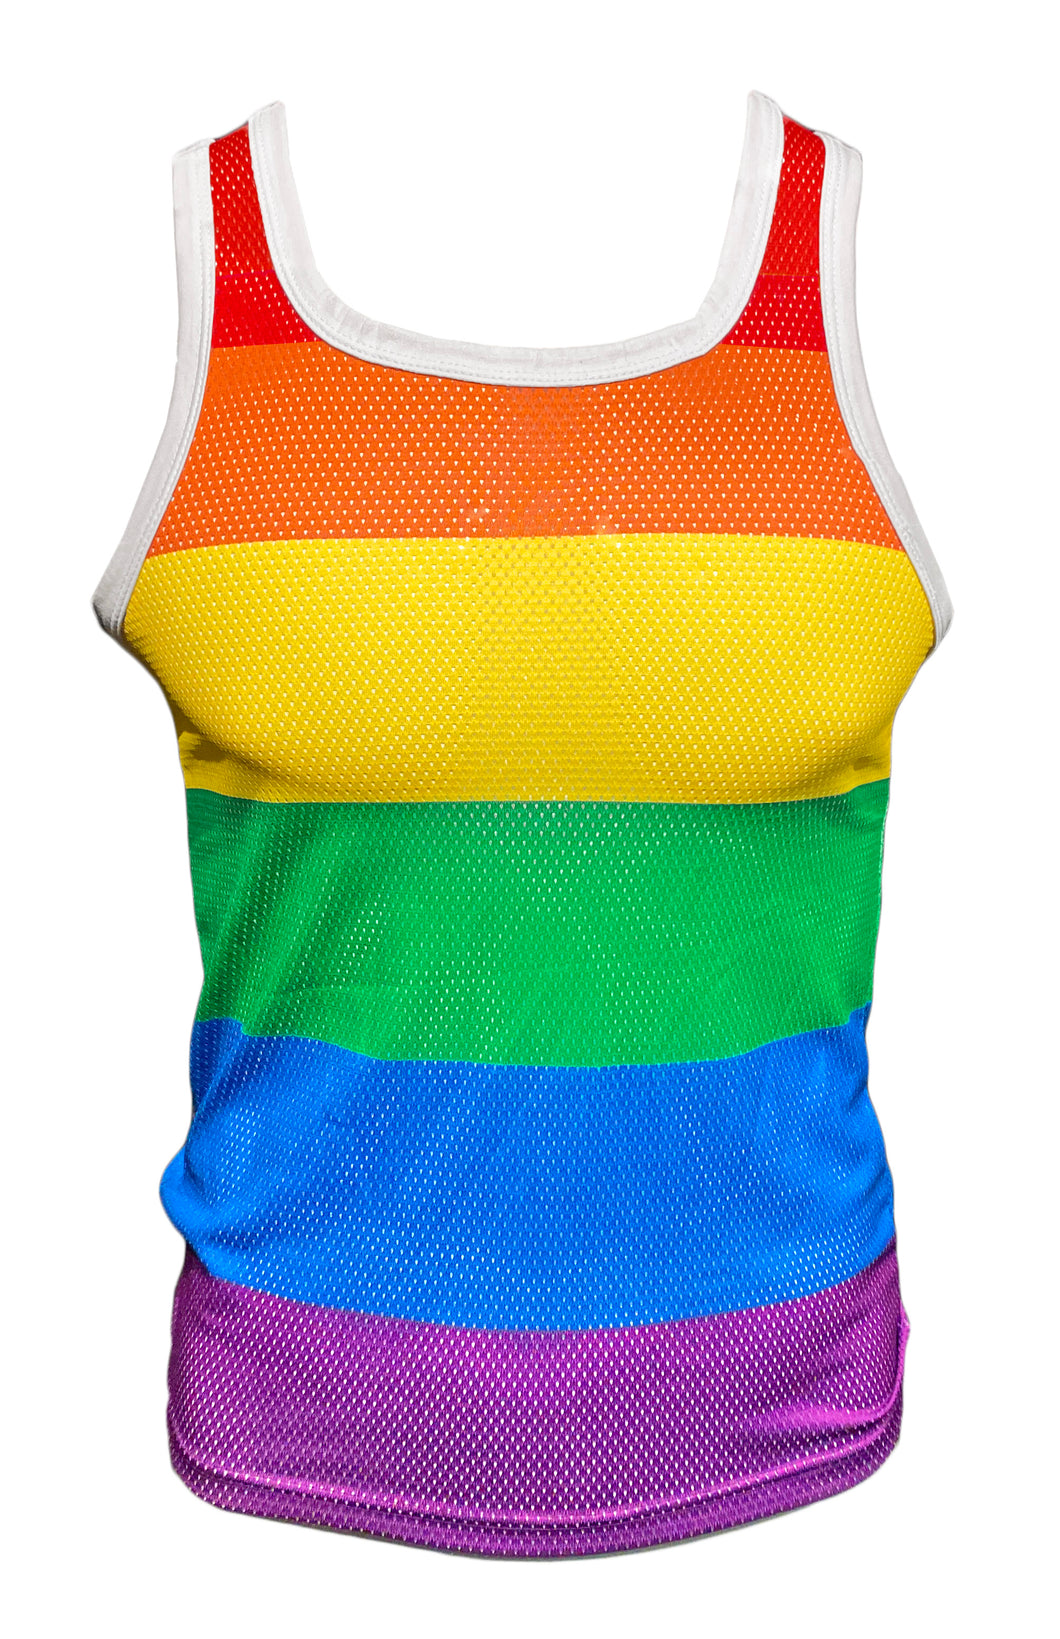 Big Rainbow Stripes Tank - Sports Mesh